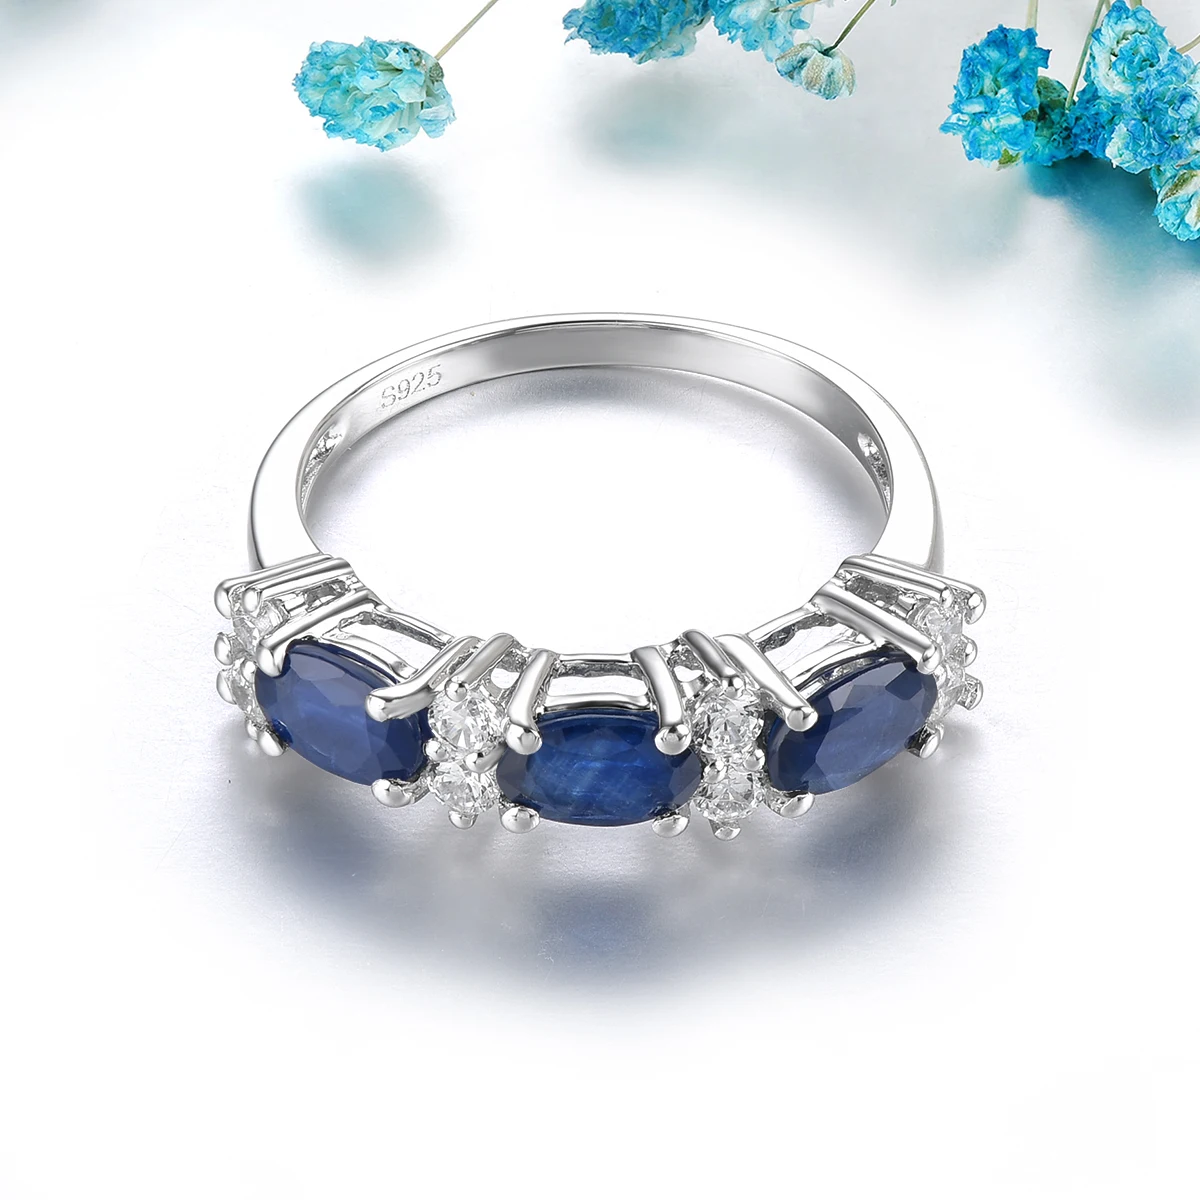 Anéis de Safira Azul Natural para Mulheres, Safira Preciosa Genuína, Prata Esterlina Sólida, Joalheria Fina Clássica, 1,8 Quilates, Design S925